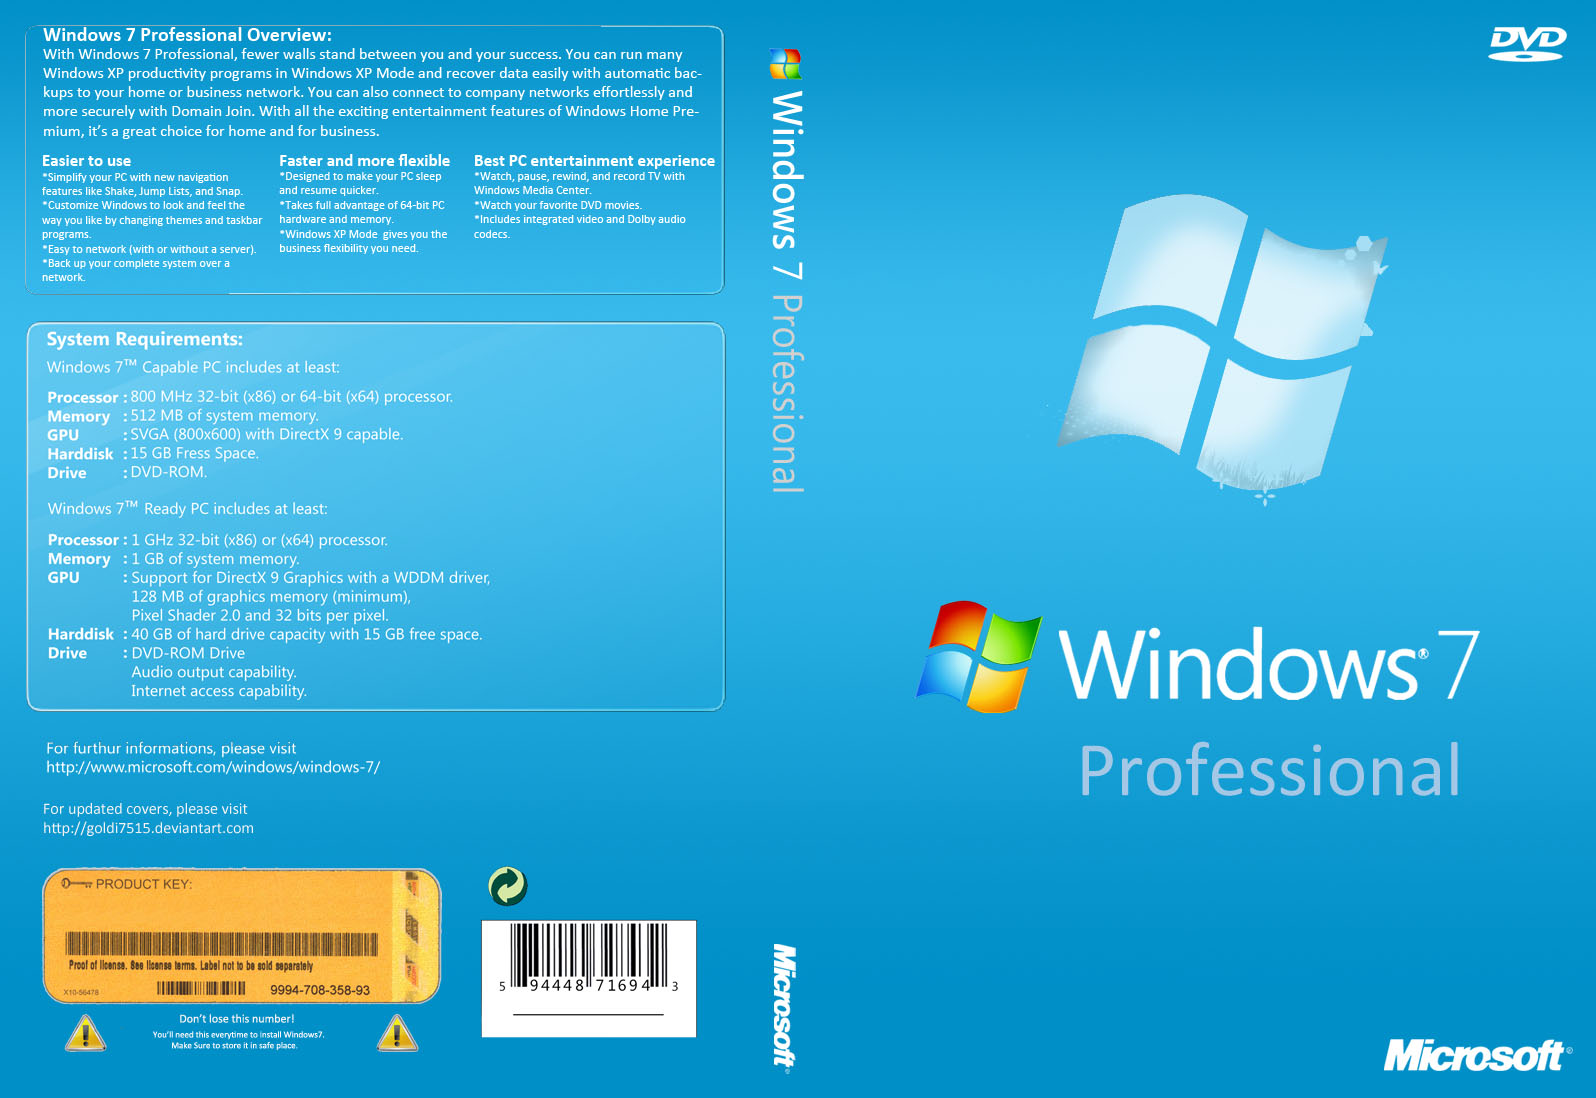 windows 7 iso download pt pt